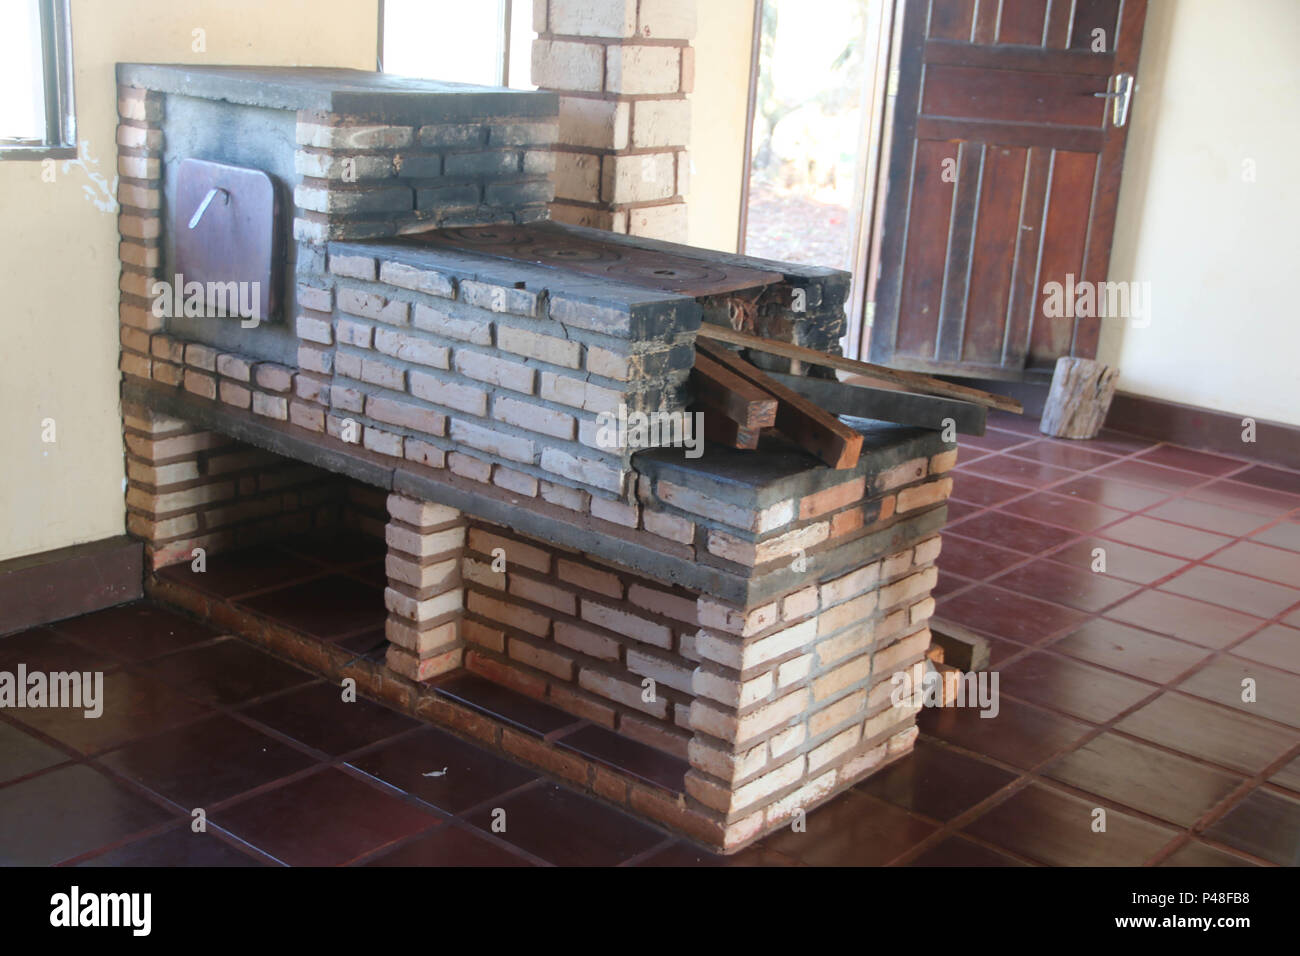 NOVA ANDRADINA, MS - 24.03.2015: COMIDA DE FAZENDA - fogão a lenha em Cozinha de Fazenda localizada na Cidade de Nova Andradina-MS. (Foto: André Chaco/Fotoarena) Stockfoto